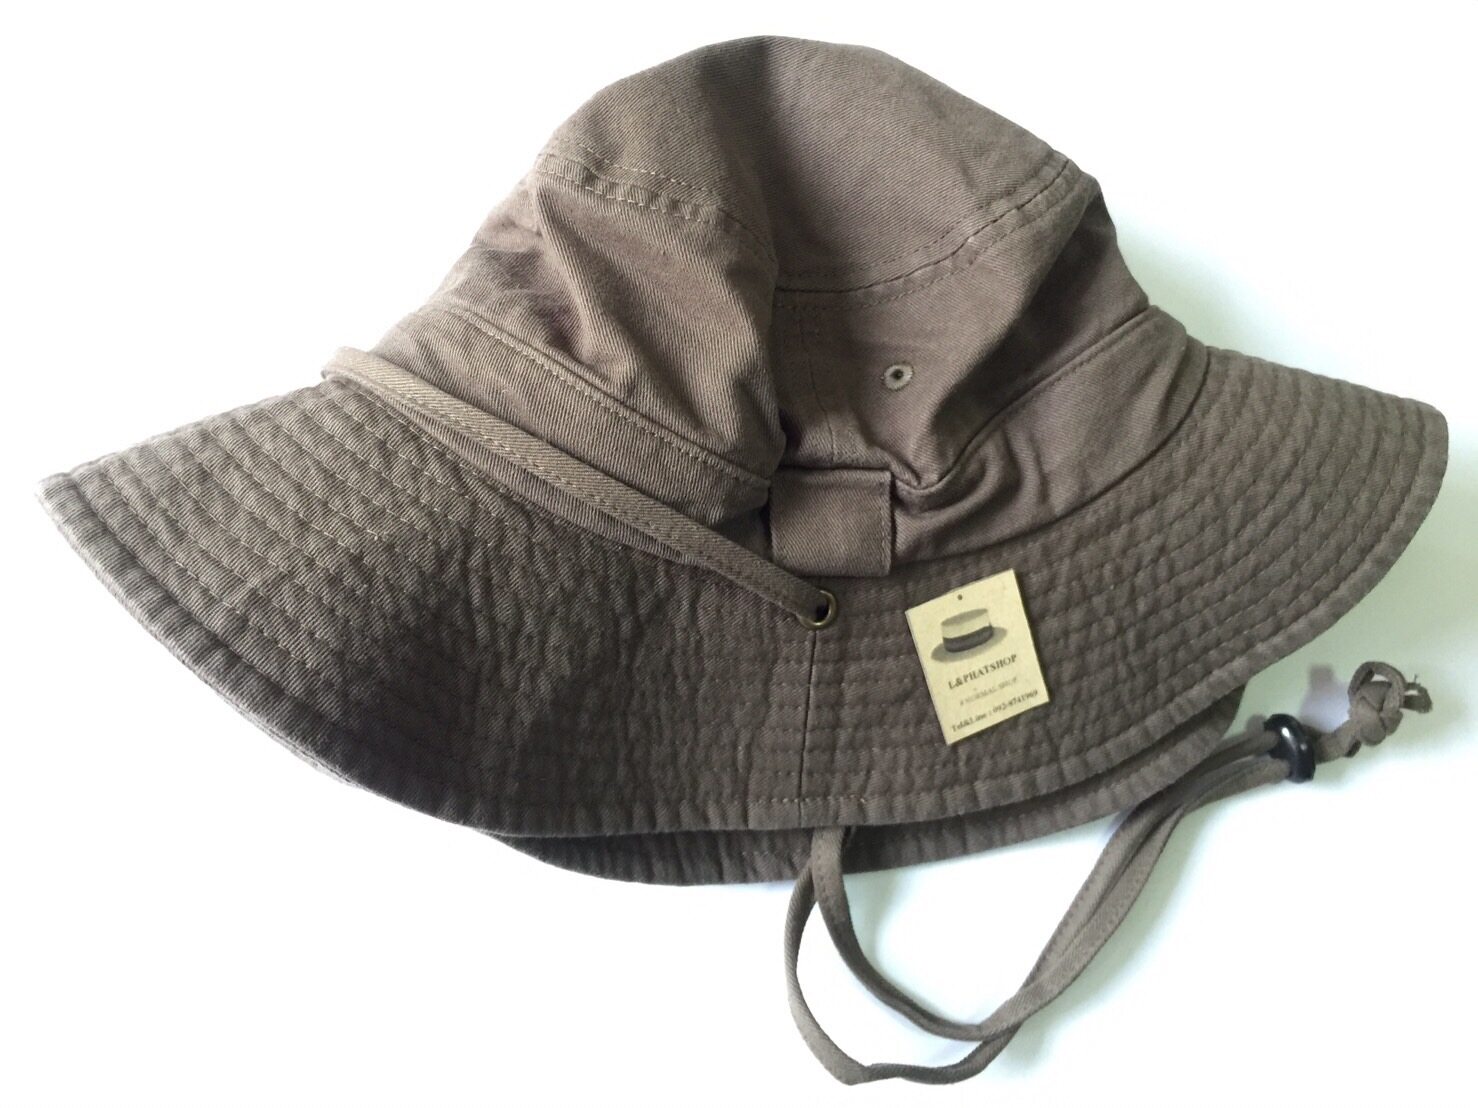 Big Vintage Hat ราคาถูก ซื้อออนไลน์ที่ - เม.ย. 2024